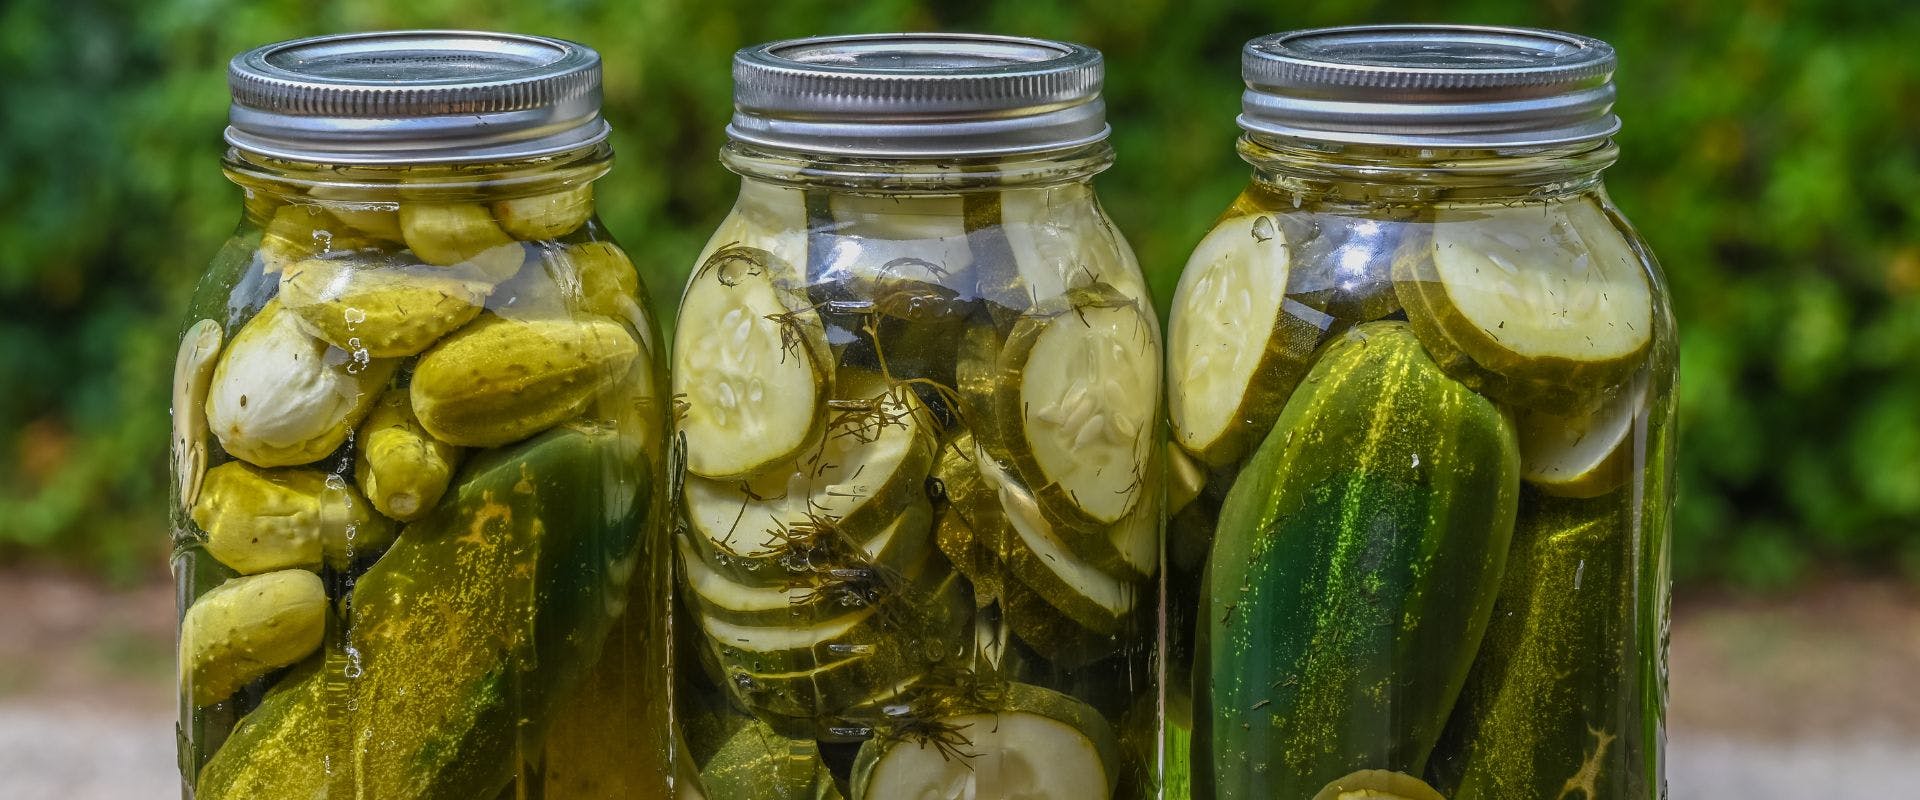 Three jars of pickles